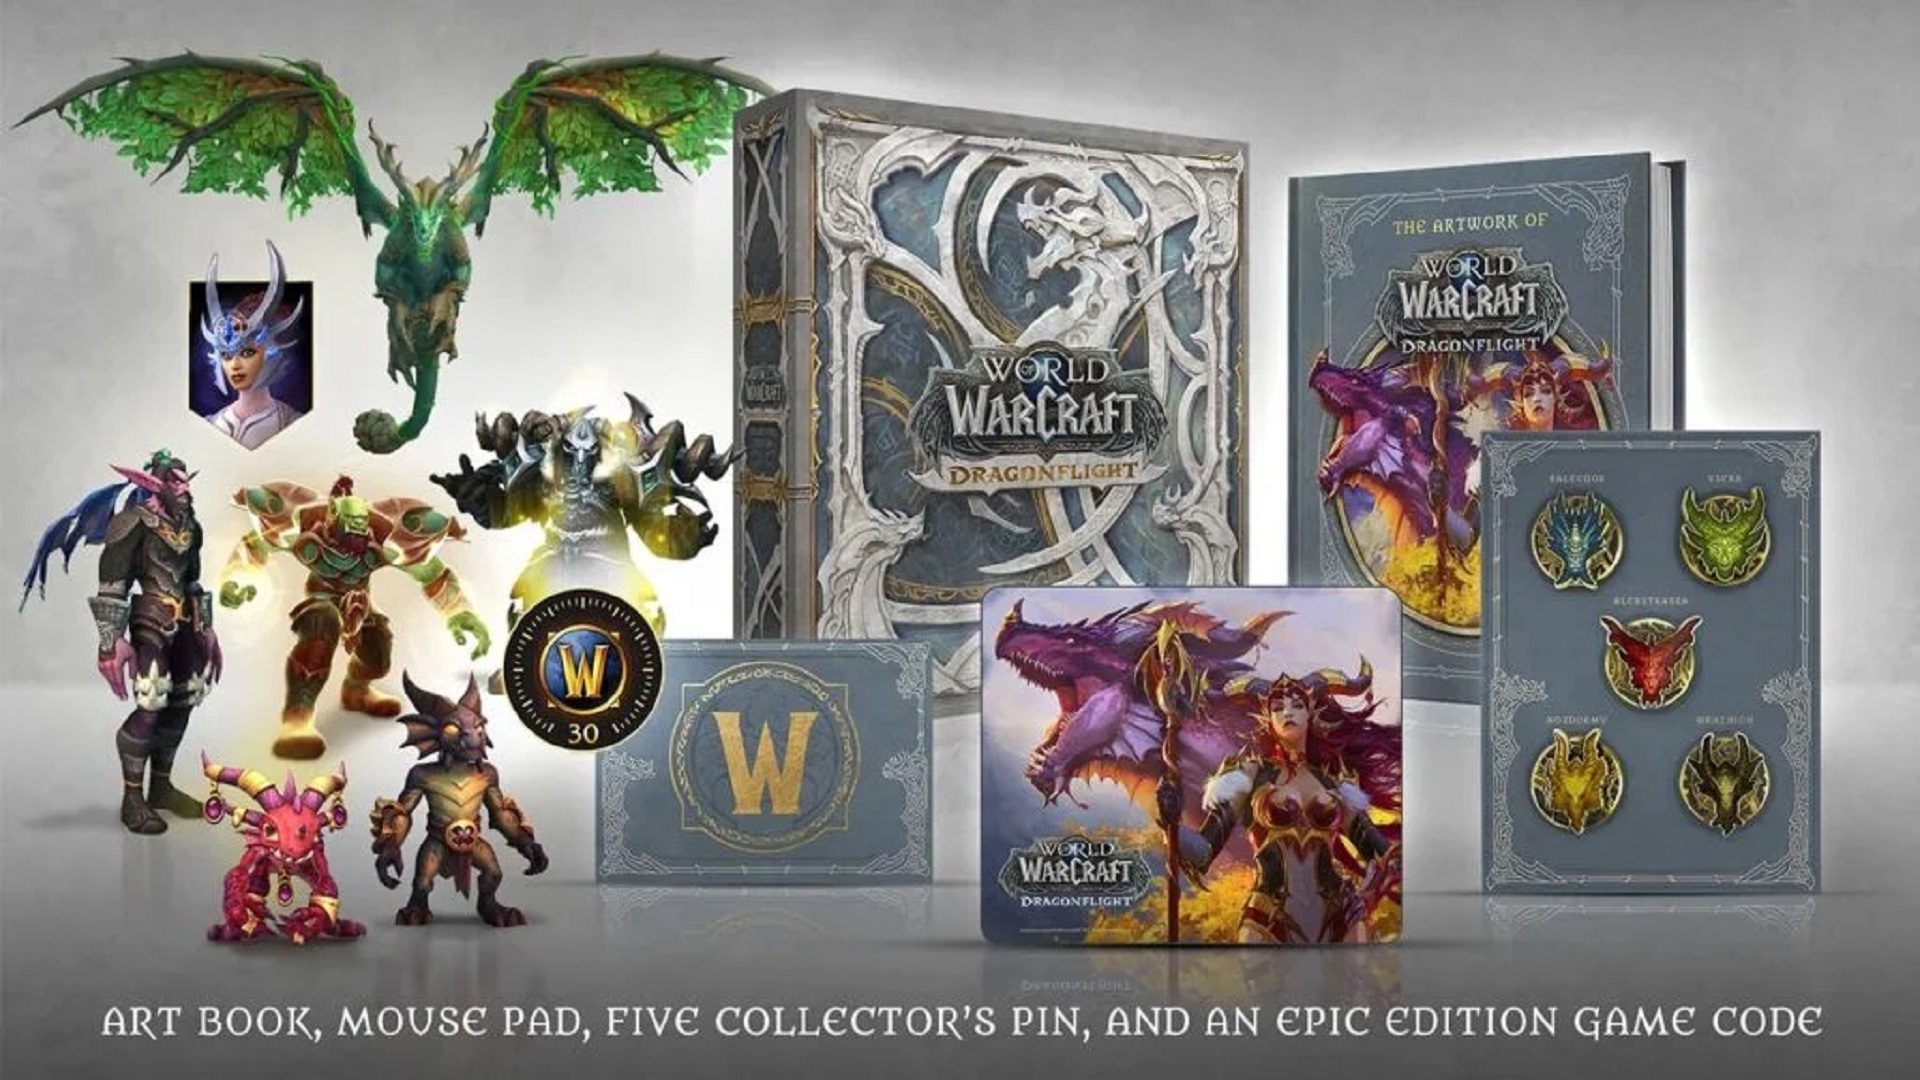 La nueva expansión de World of Warcraft se lanzará en 2022 - Se confirma el lanzamiento de Dragonflight, la nueva expansión de World of Warcraft, para 2022, además de revelar sus diferentes ediciones.